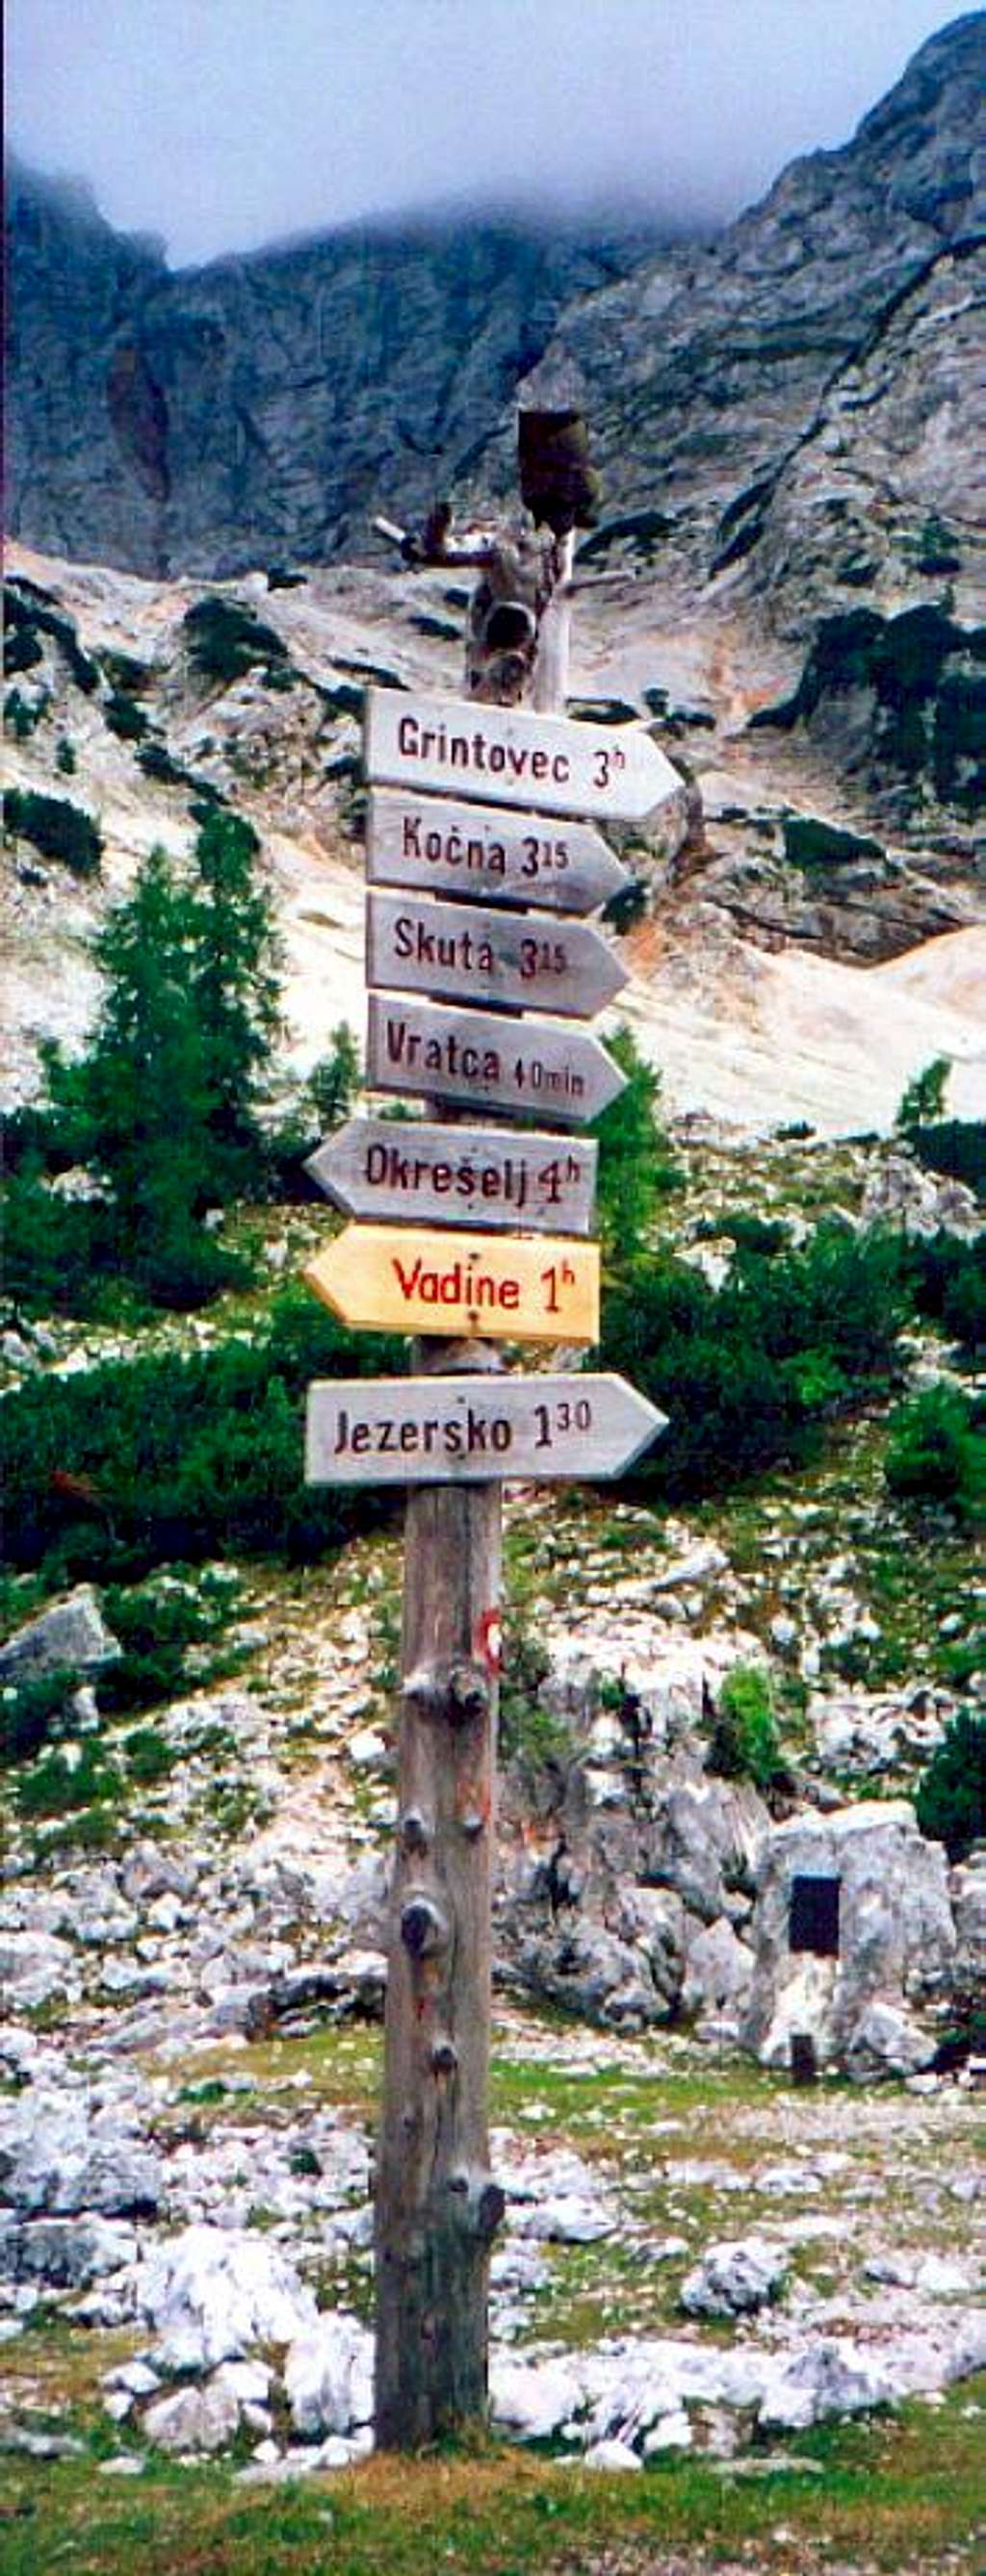 Grintovec route